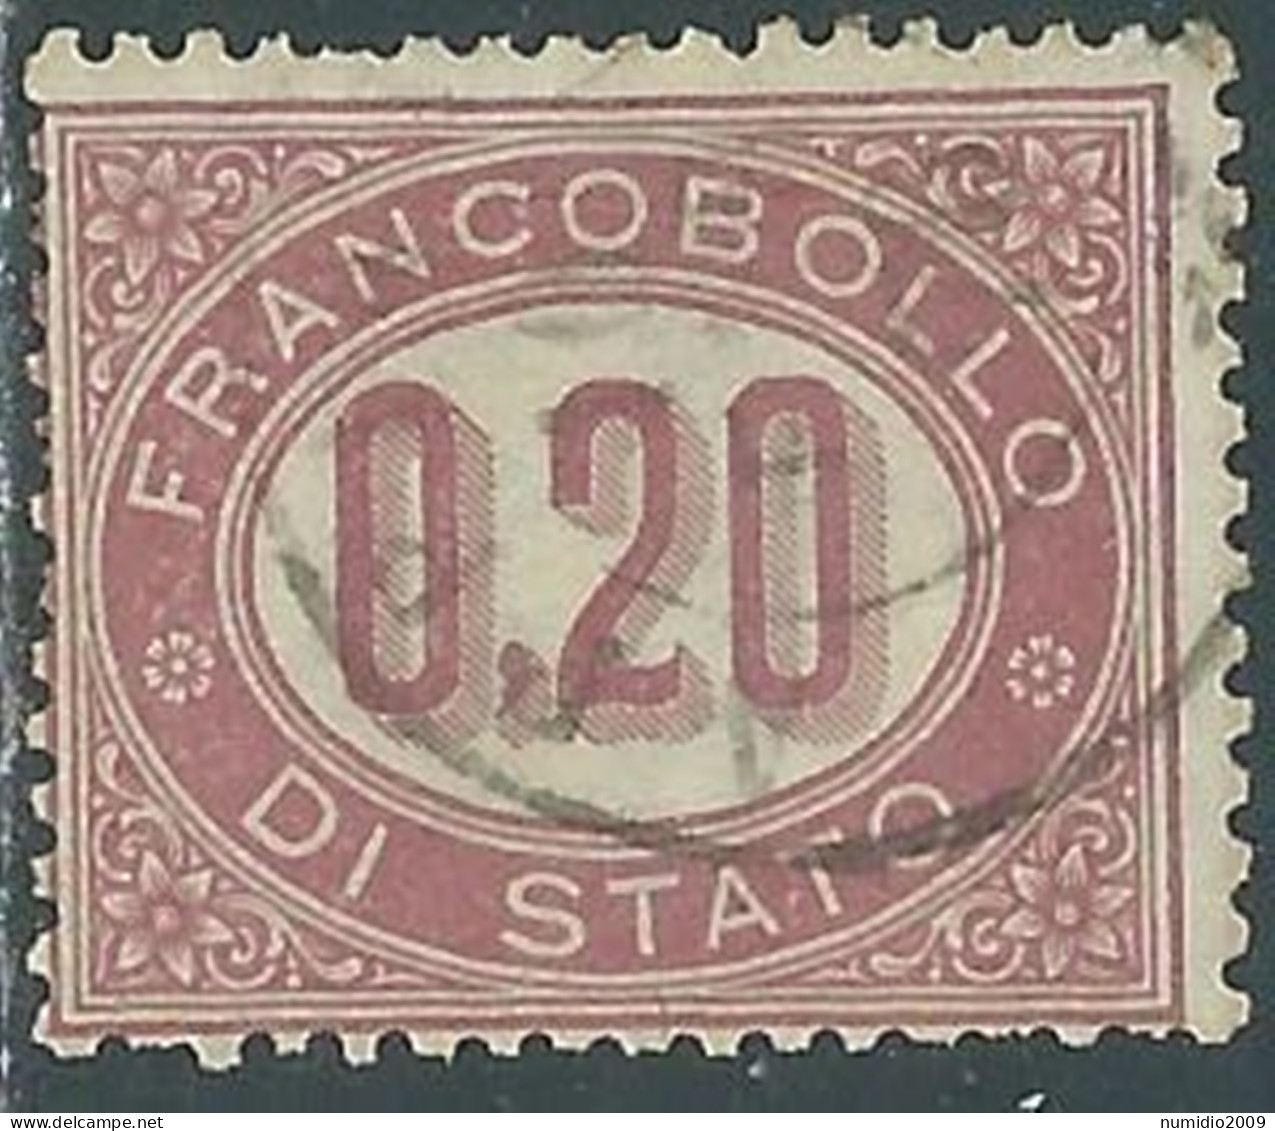 1875 REGNO SERVIZIO DI STATO USATO 20 CENT - P12-2 - Servizi